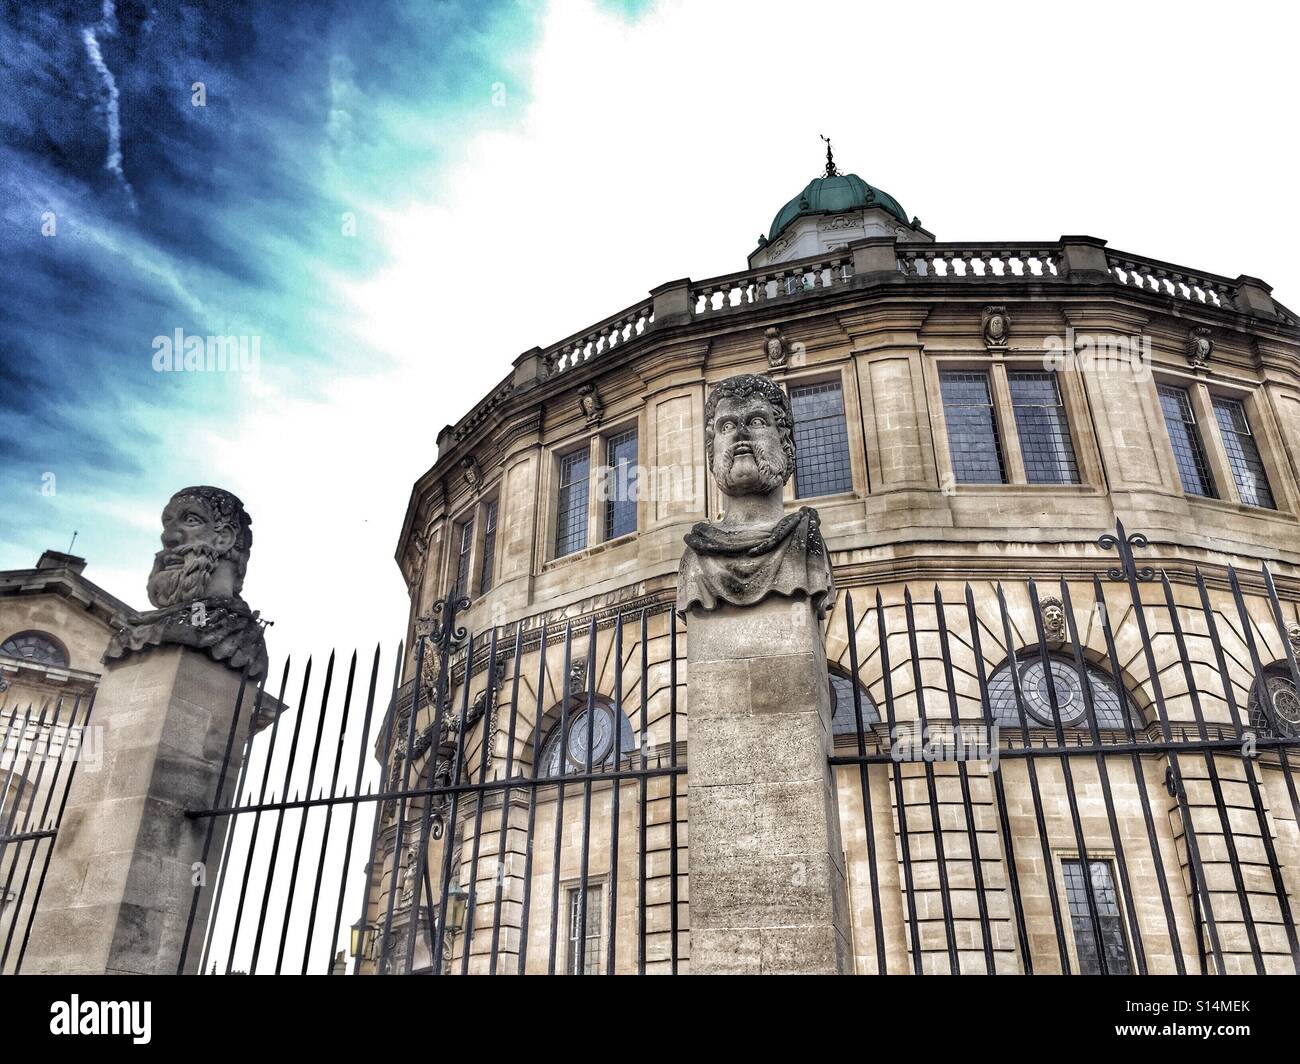 Oxford architecture Stock Photo